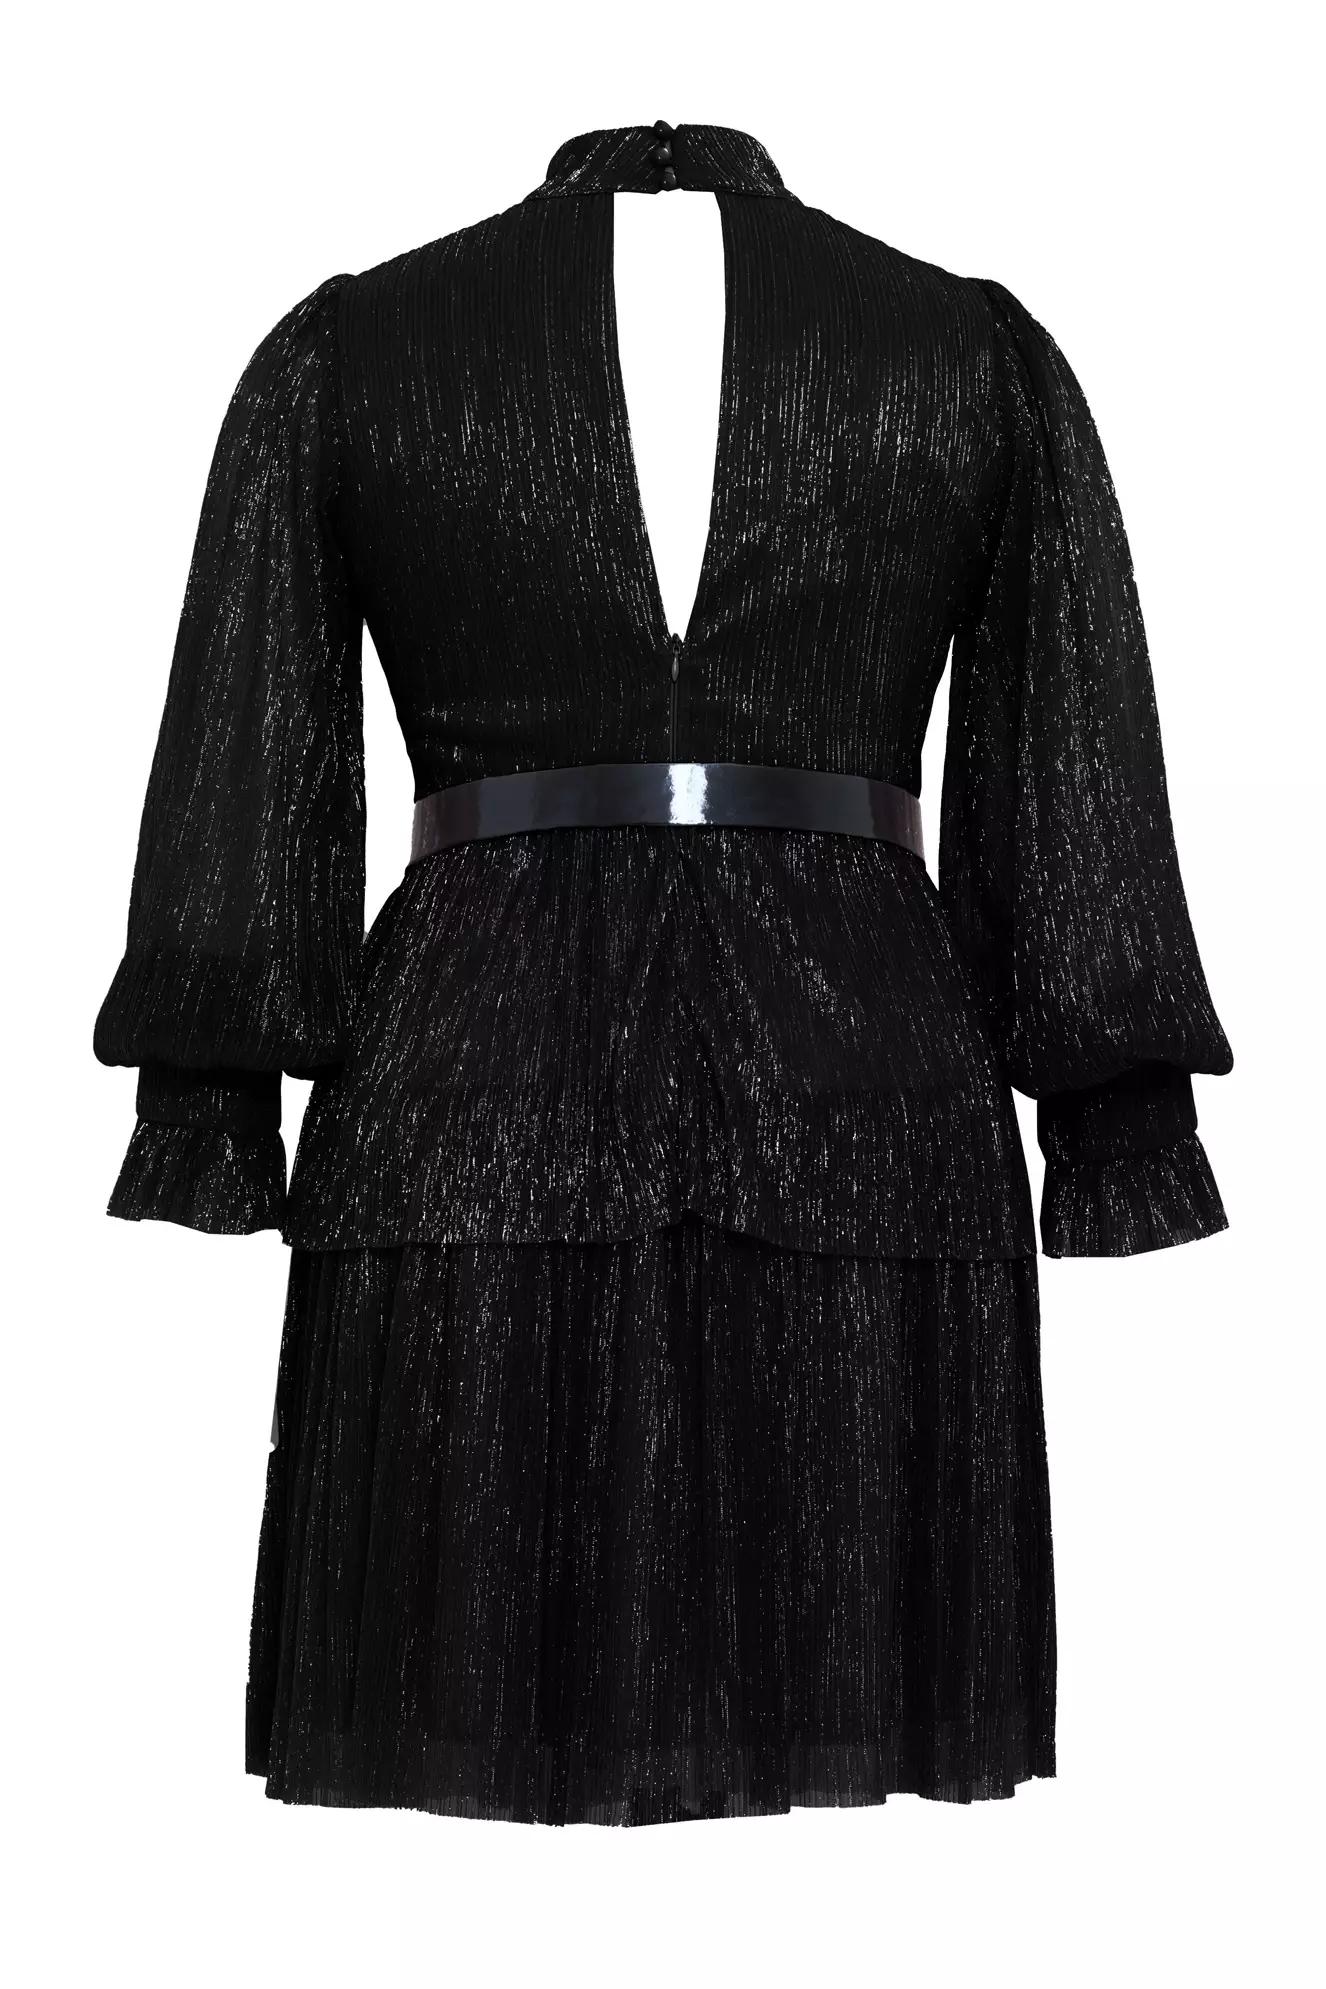 Black plus size moonlight long sleeve mini dress